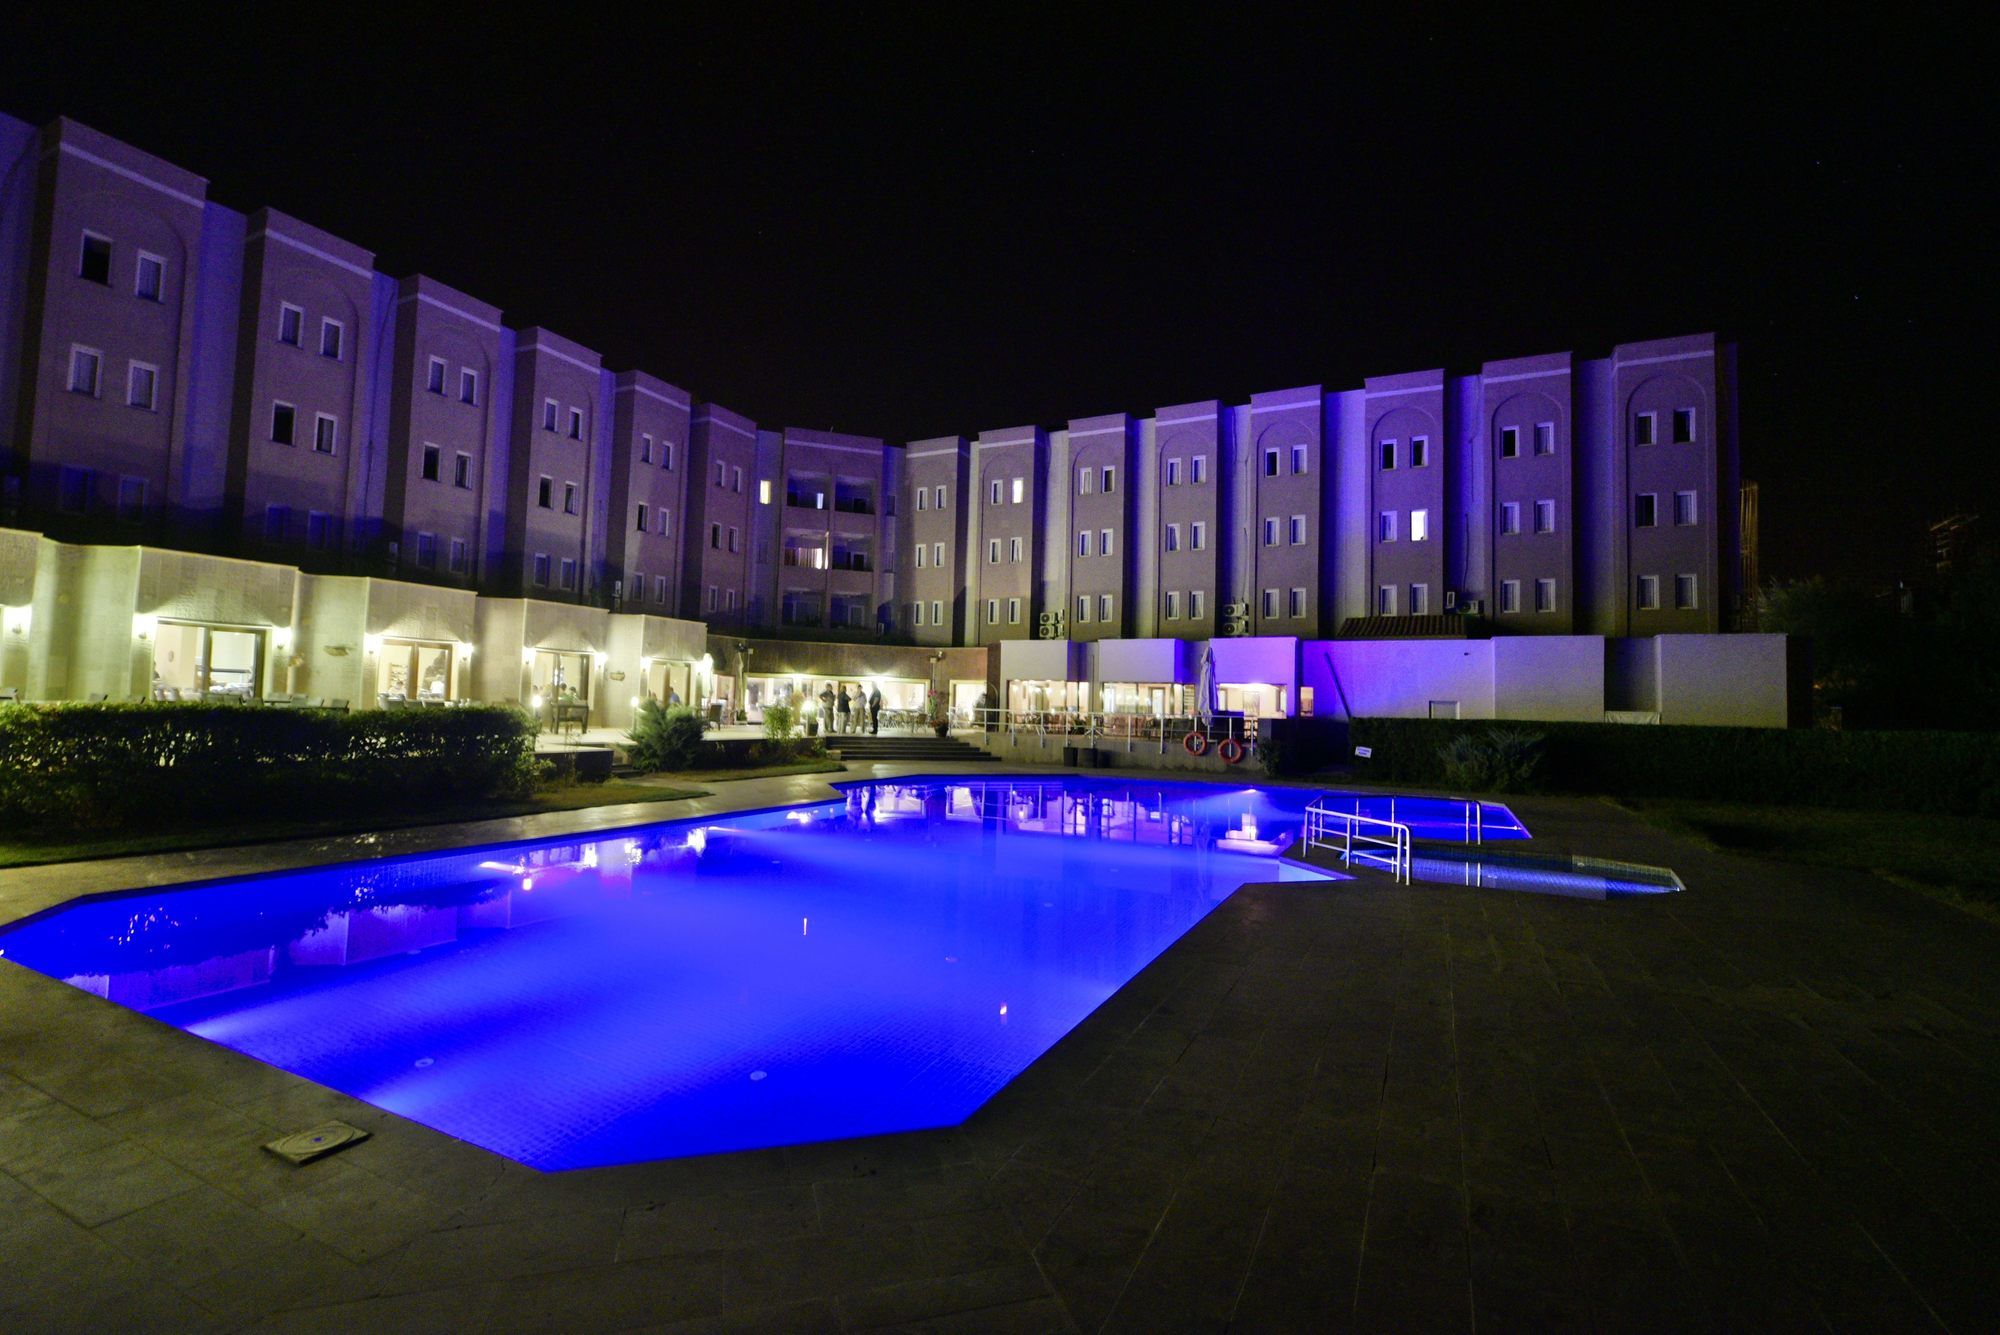 Avrasya Hotel